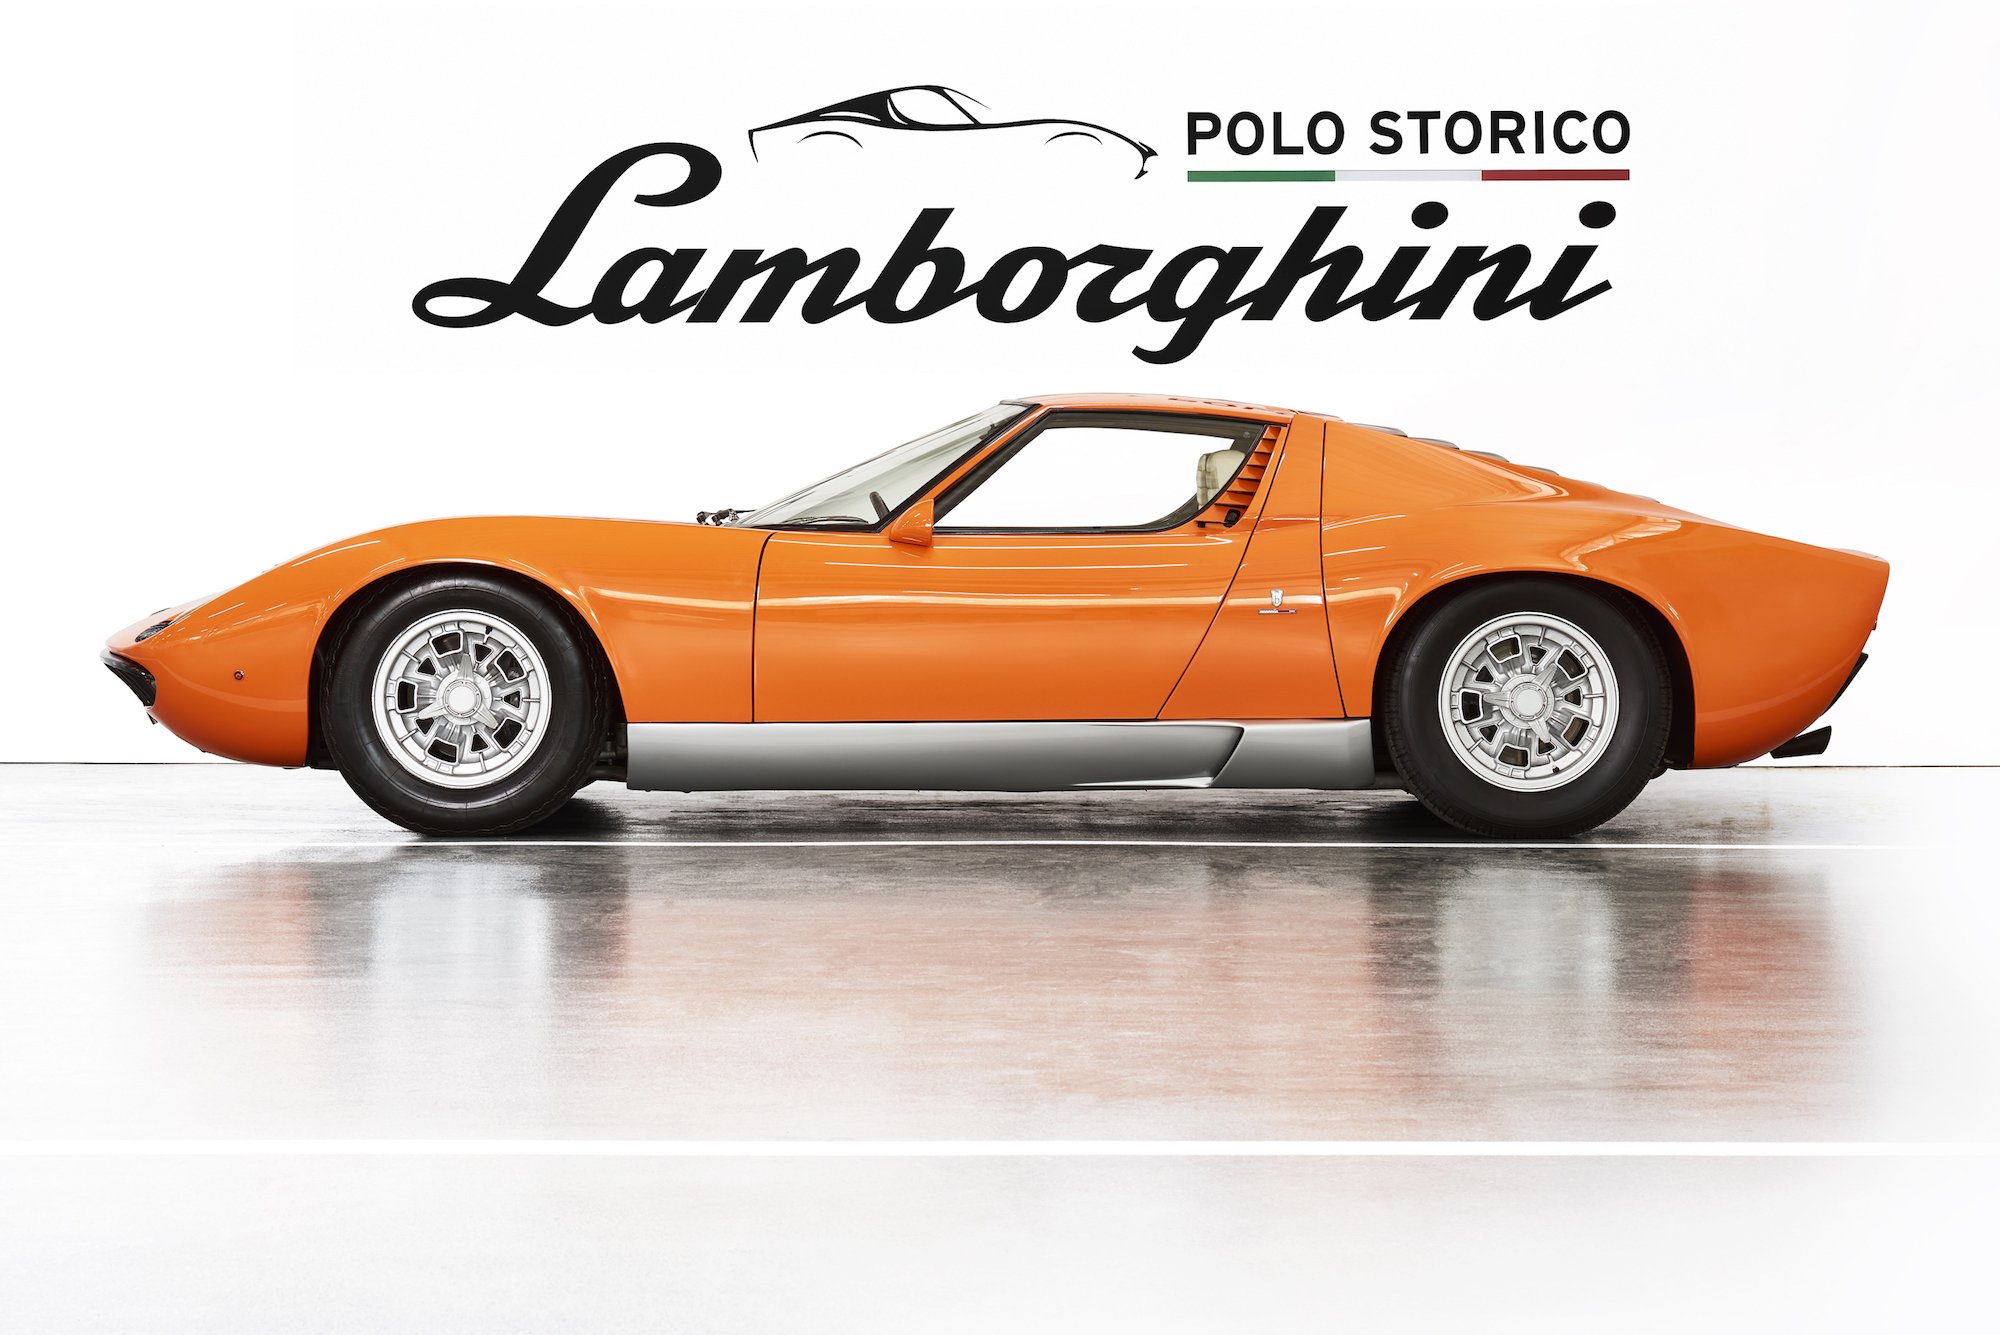 Lamborghini Miura P400: al Polo Storico “The Italian Job” del 1969 1